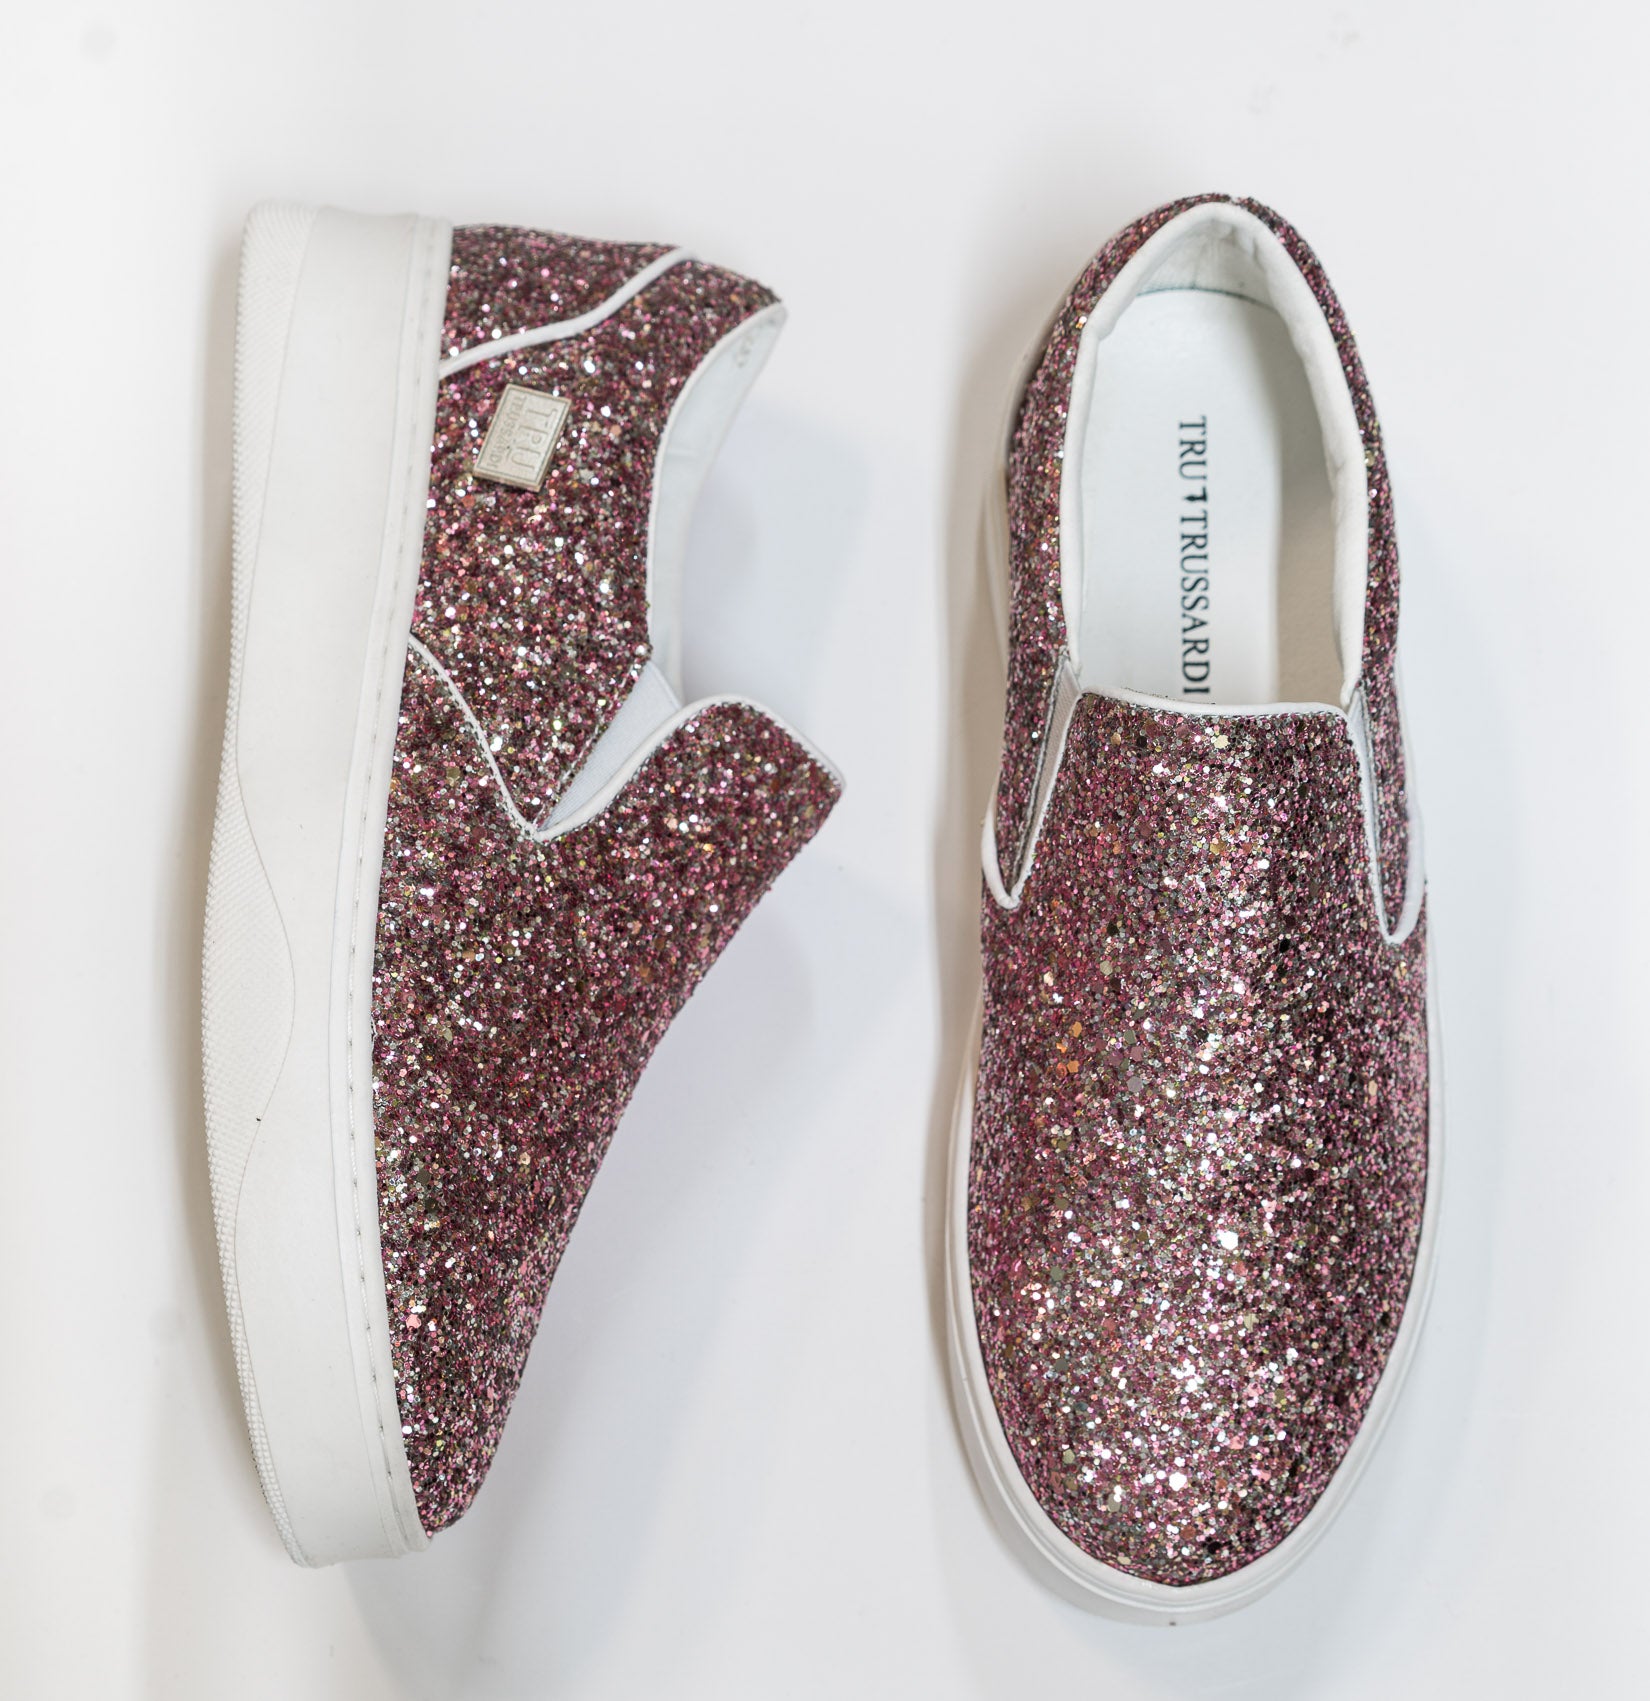 Trussardi Women's Pink Glitter Slip on Sneakers 28A